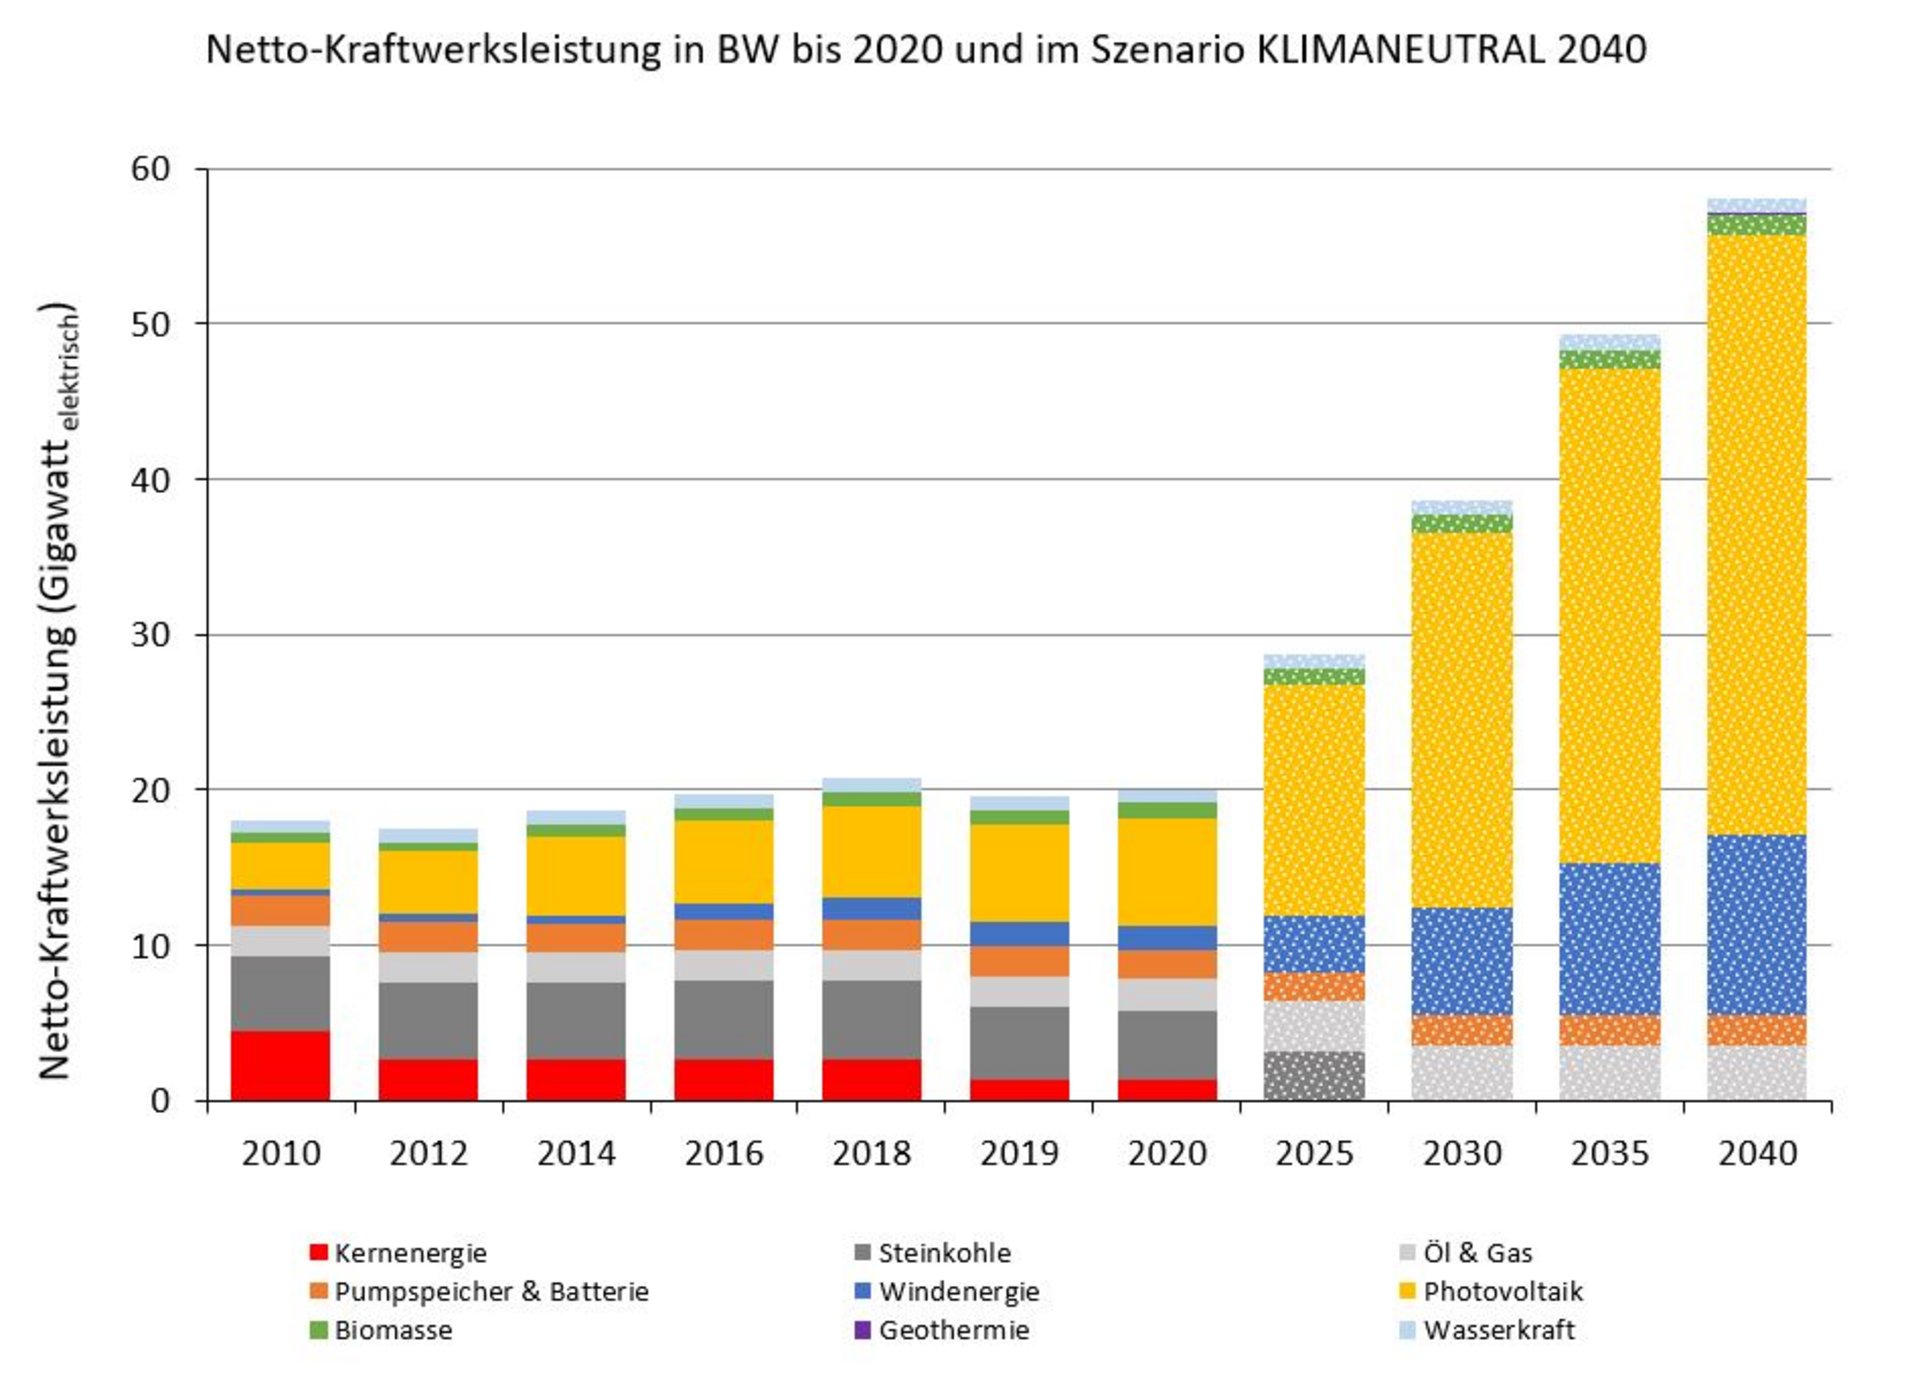 Netto-Kraftwerksleistung in BW bis 2020 und im Szenario KLIMANEUTRAL 2040